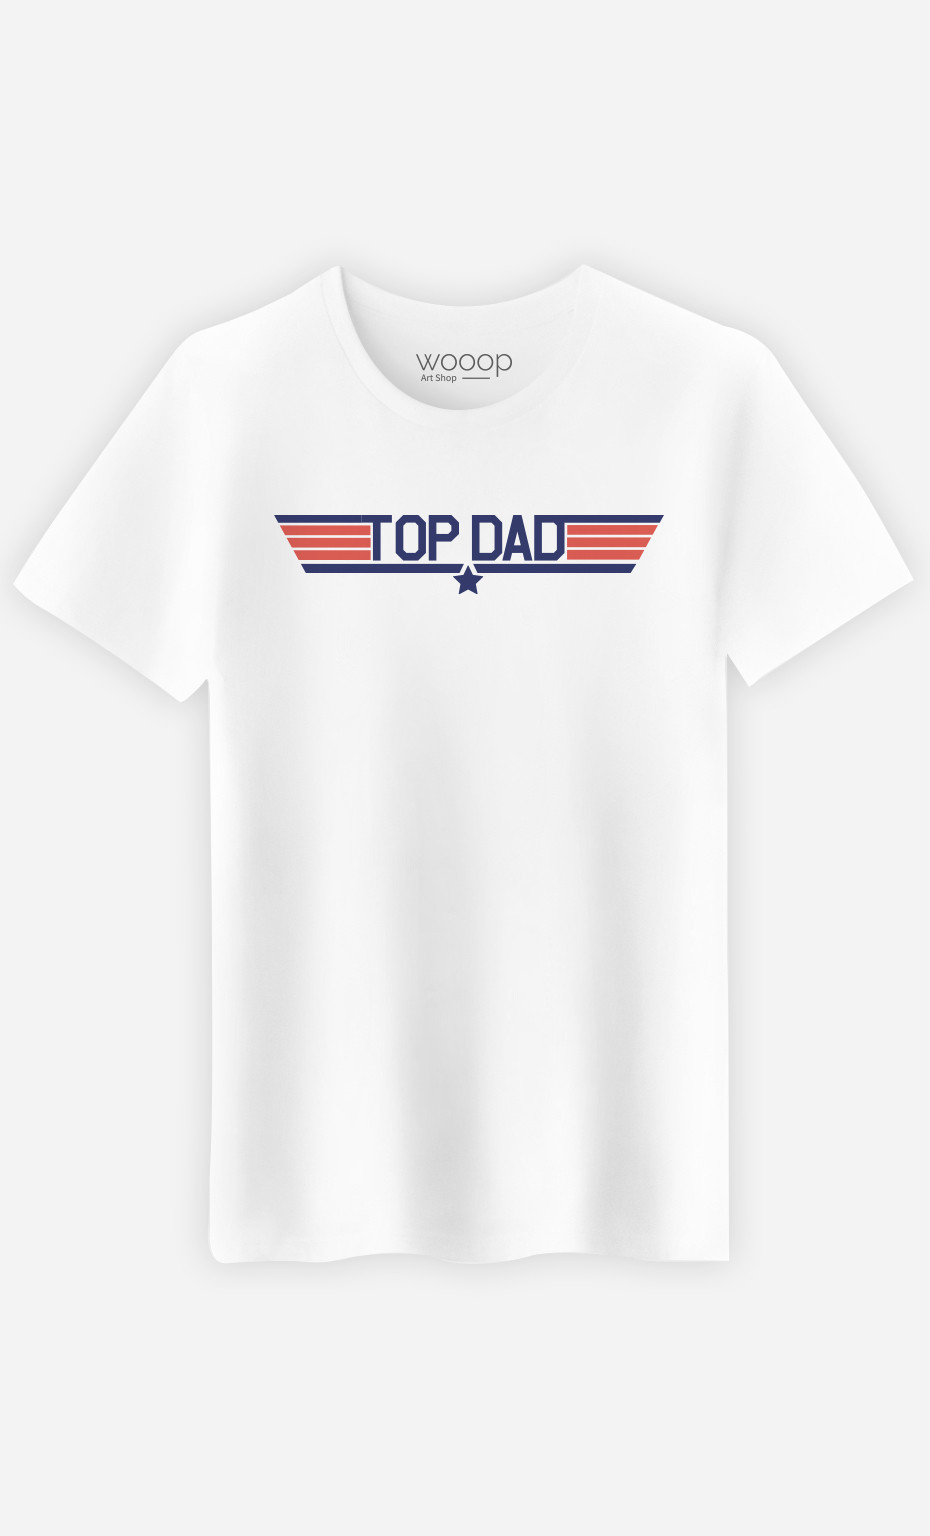 T-Shirt Herren Top Dad